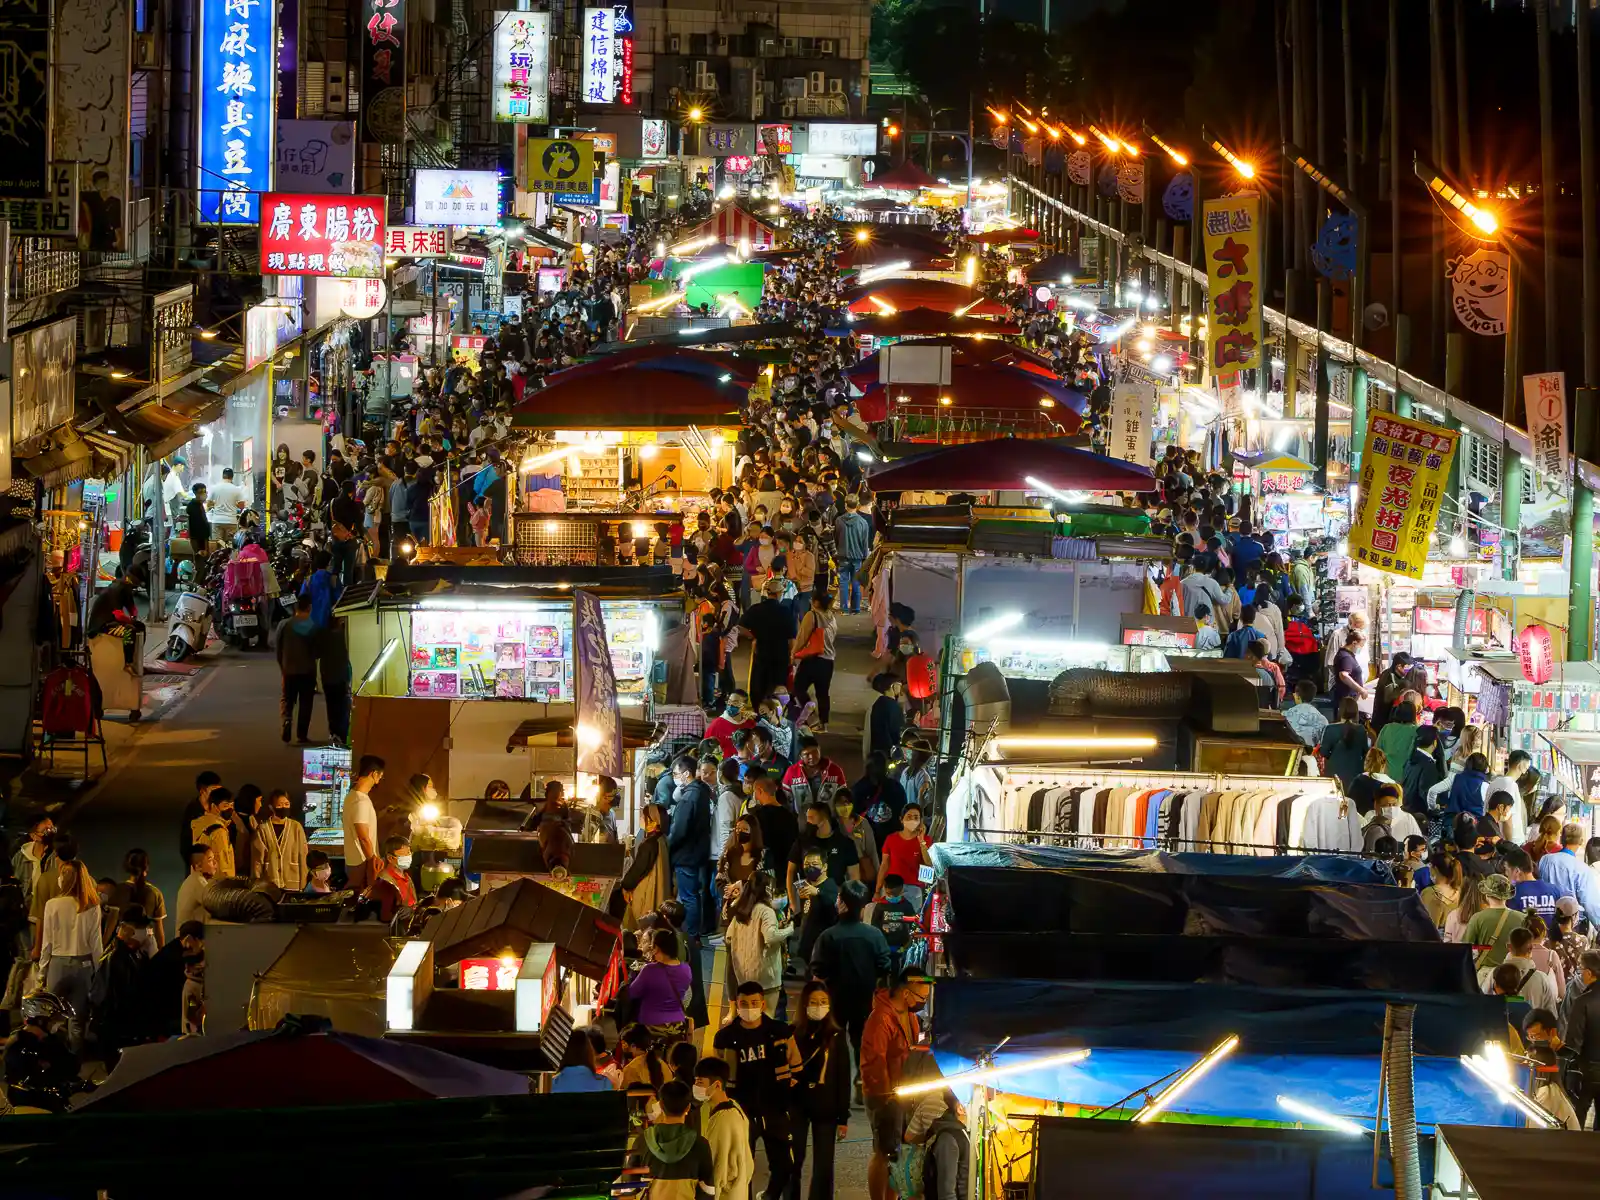 An aerial shot of the three aisles of Zhongli Night Market at night.